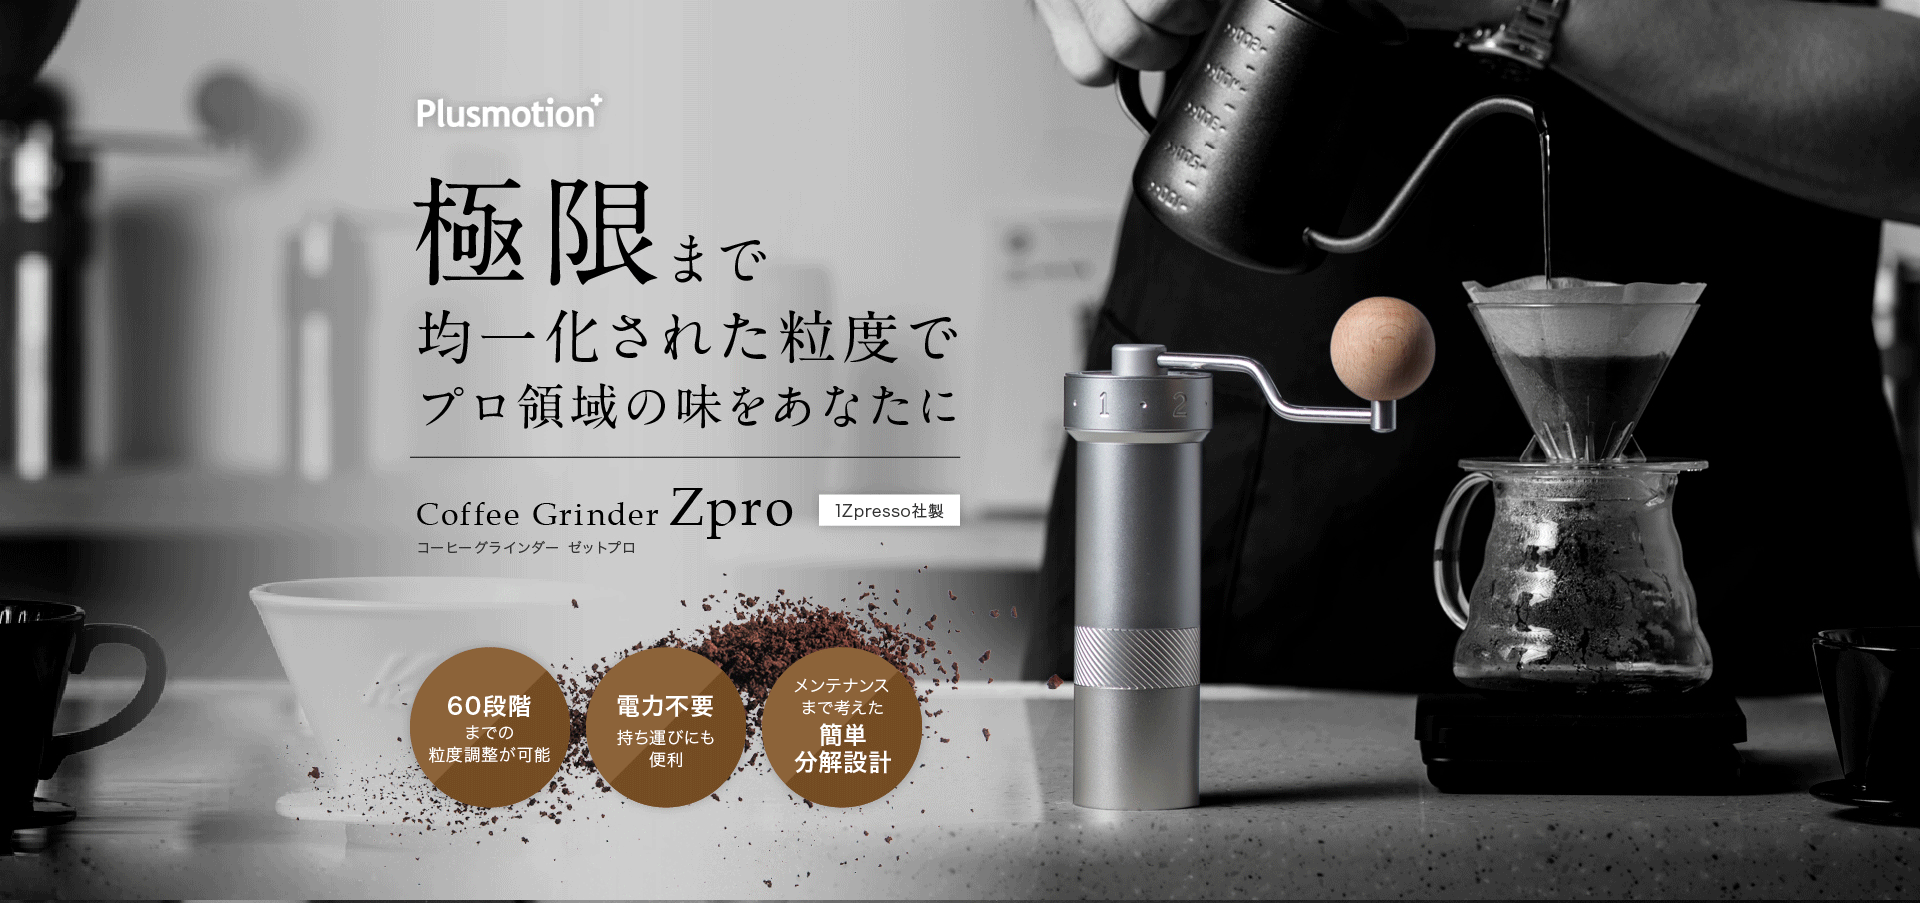 コーヒーグラインダー Zpro 手挽き 臼式 | Plusmotion プラスモーション